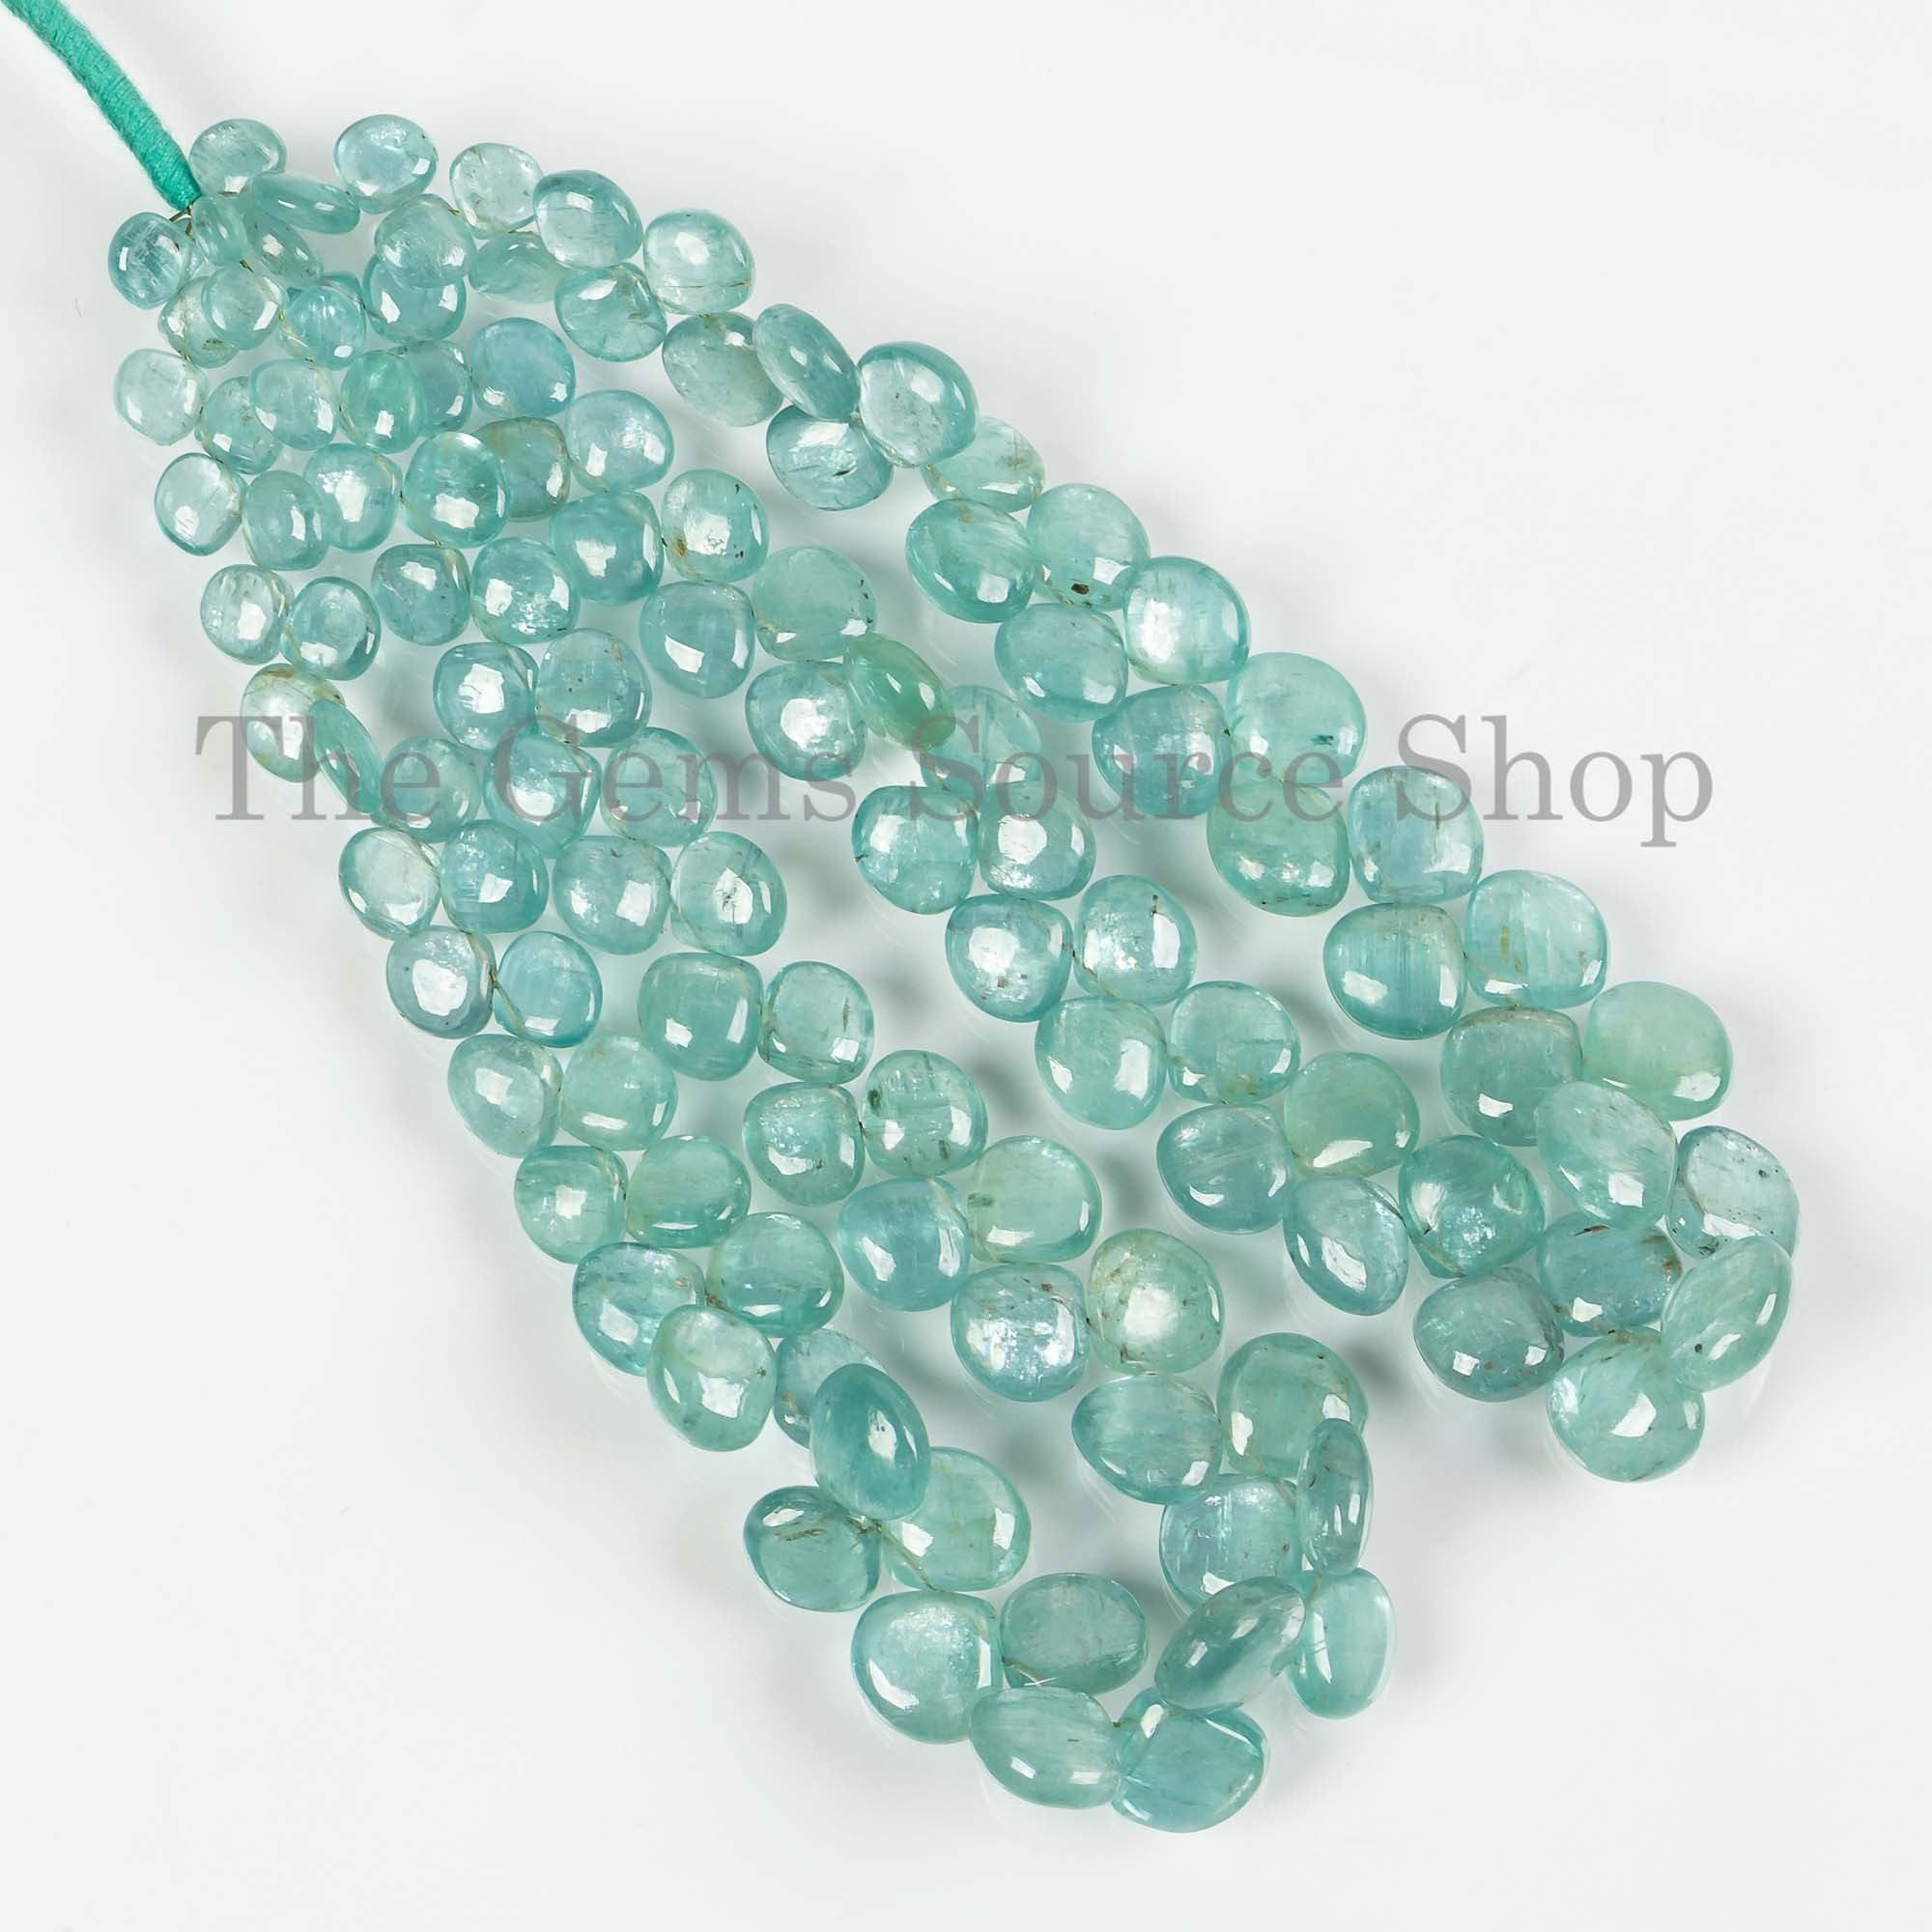 Rare Kyanite Smooth Heart Beads, 5.5-11mm Kyanite Heart Briolette, Smooth Beads, Heart Shape Beads, Kyanite Gemstone, Jewelry Beads